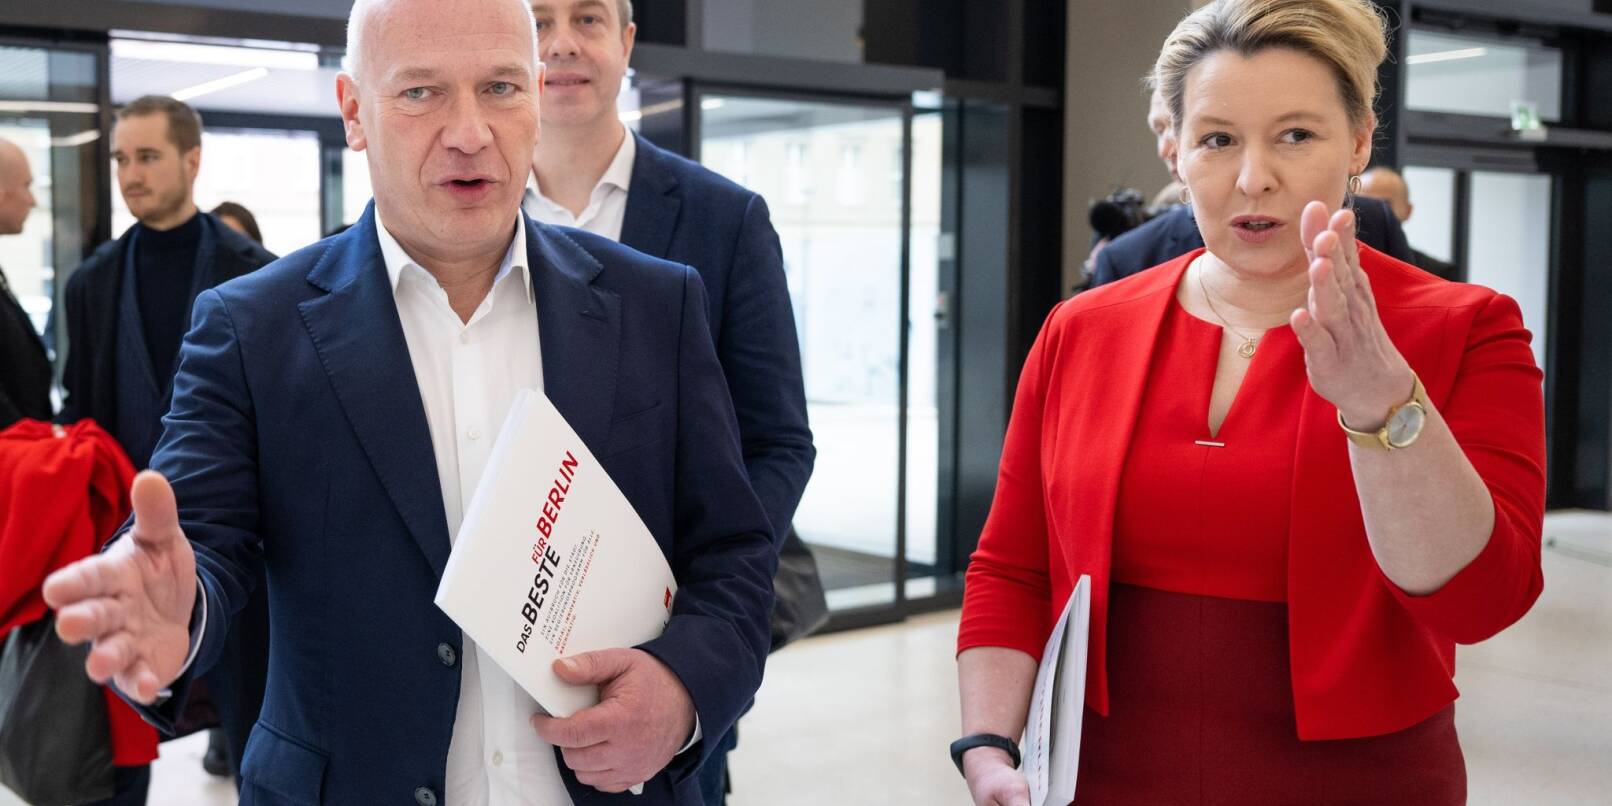 Die Regierende Bürgermeisterin Franziska Giffey (SPD) und der Berliner CDU-Chef Kai Wegner wollen eine Koalition eingehen.